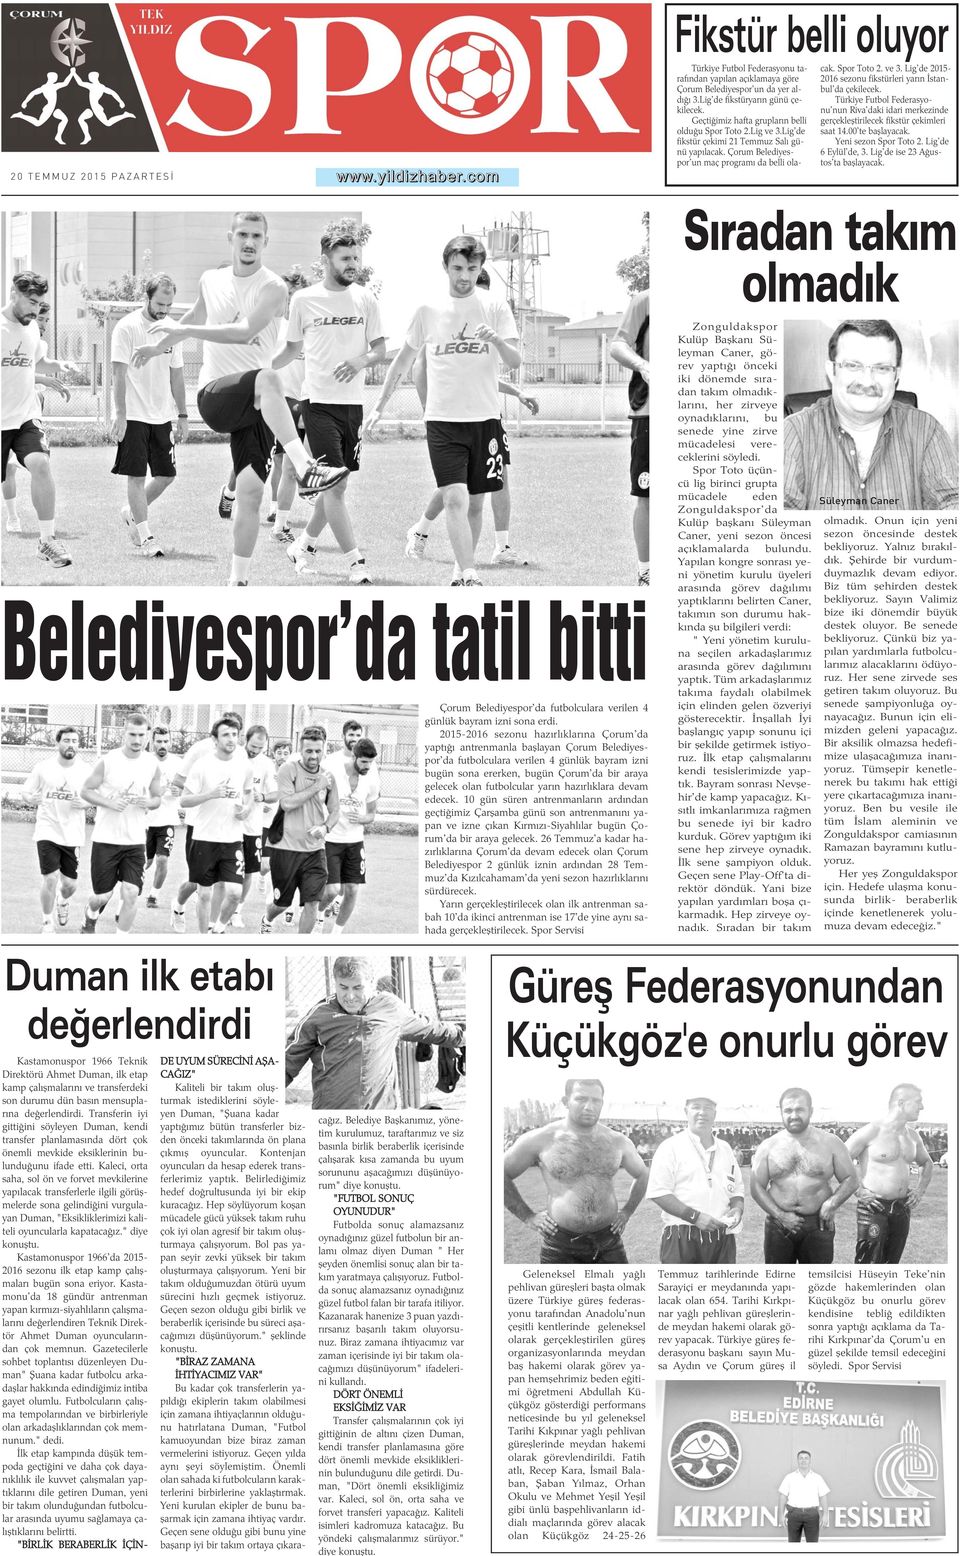 Çorum Belediyespor'un maç programý da belli olacak. Spor Toto 2. ve 3. Lig'de 2015-2016 sezonu fikstürleri yarýn Ýstanbul'da çekilecek.